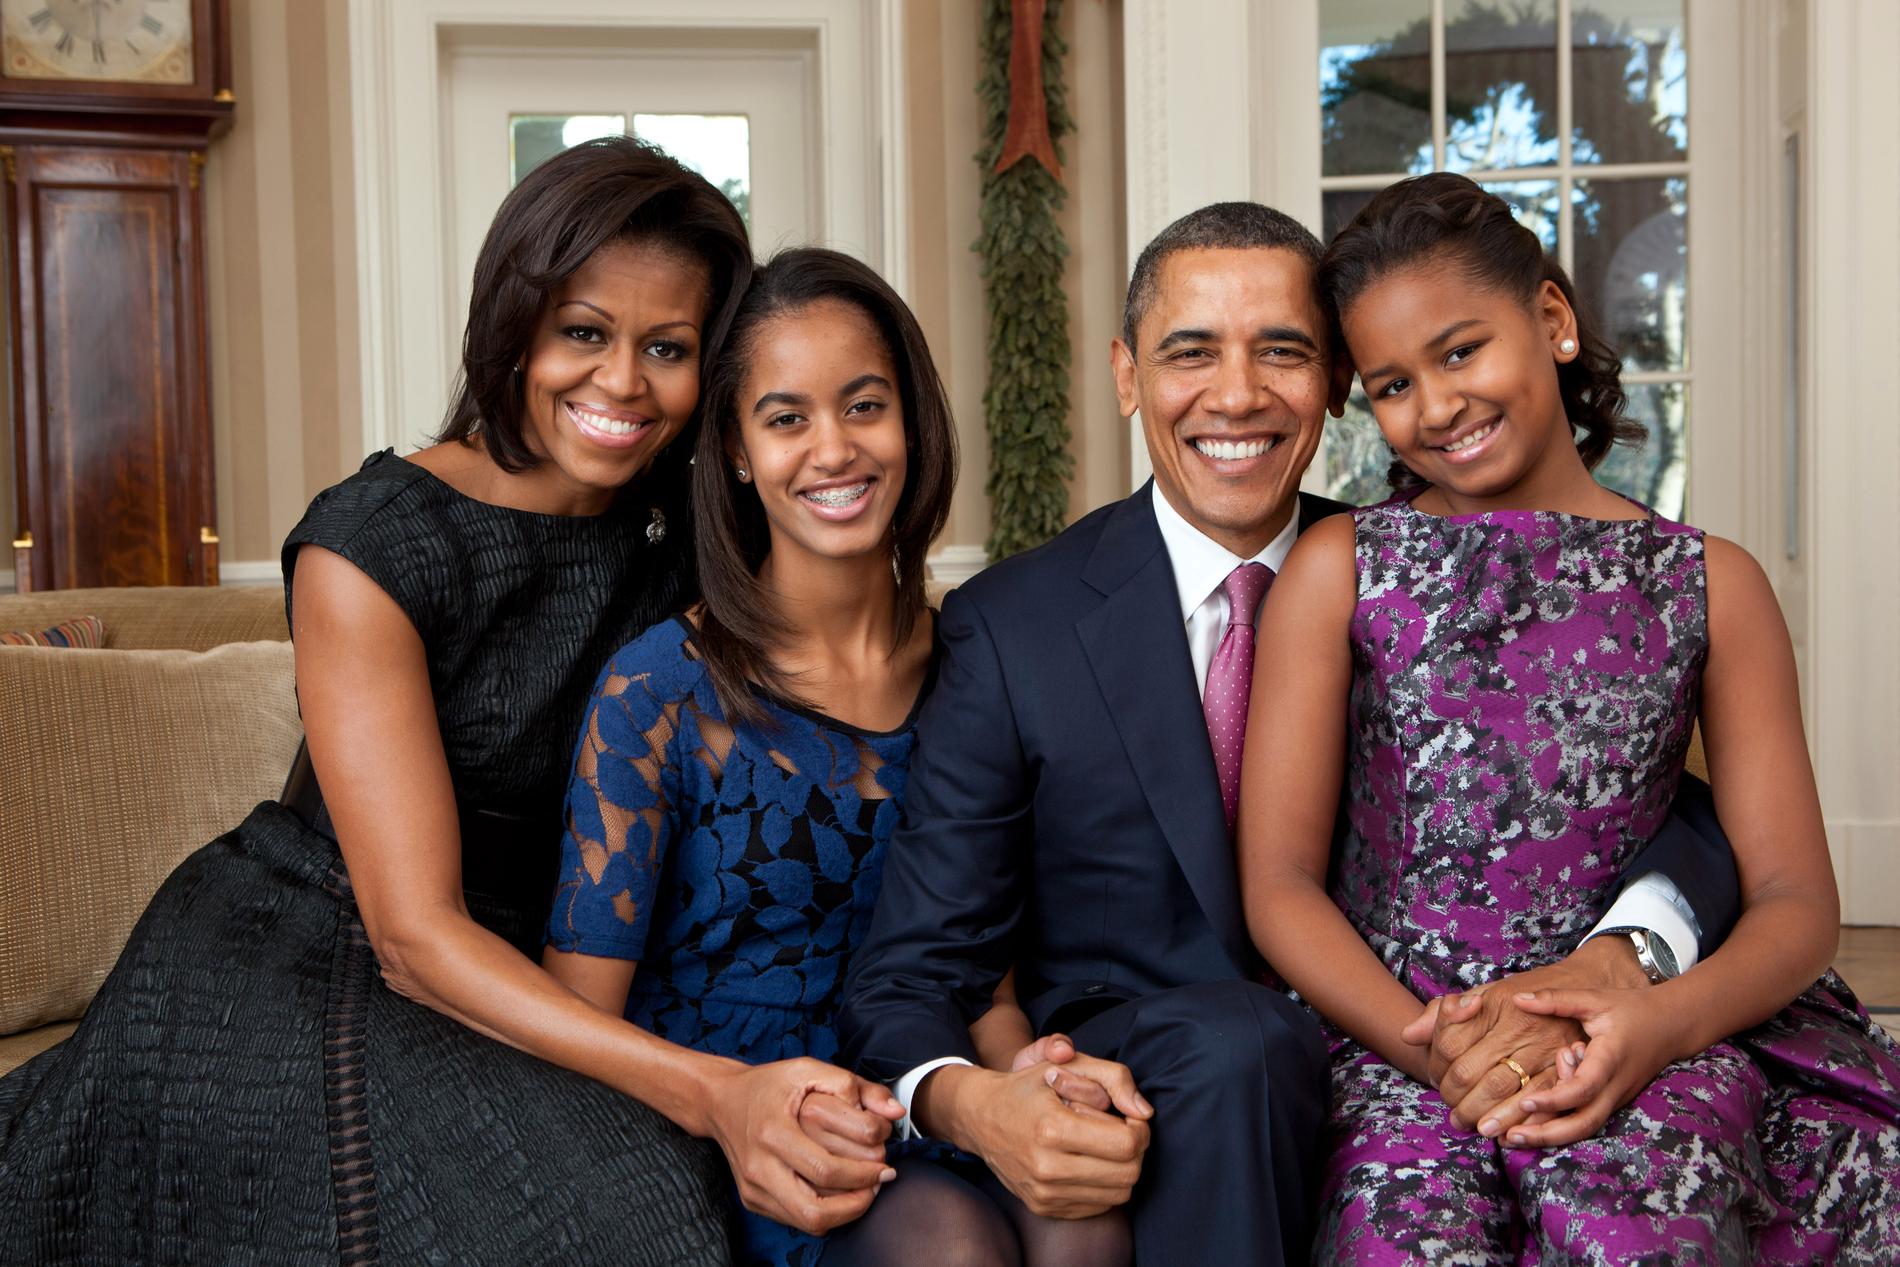 Med familjen, i Ovala rummet i december 2011.